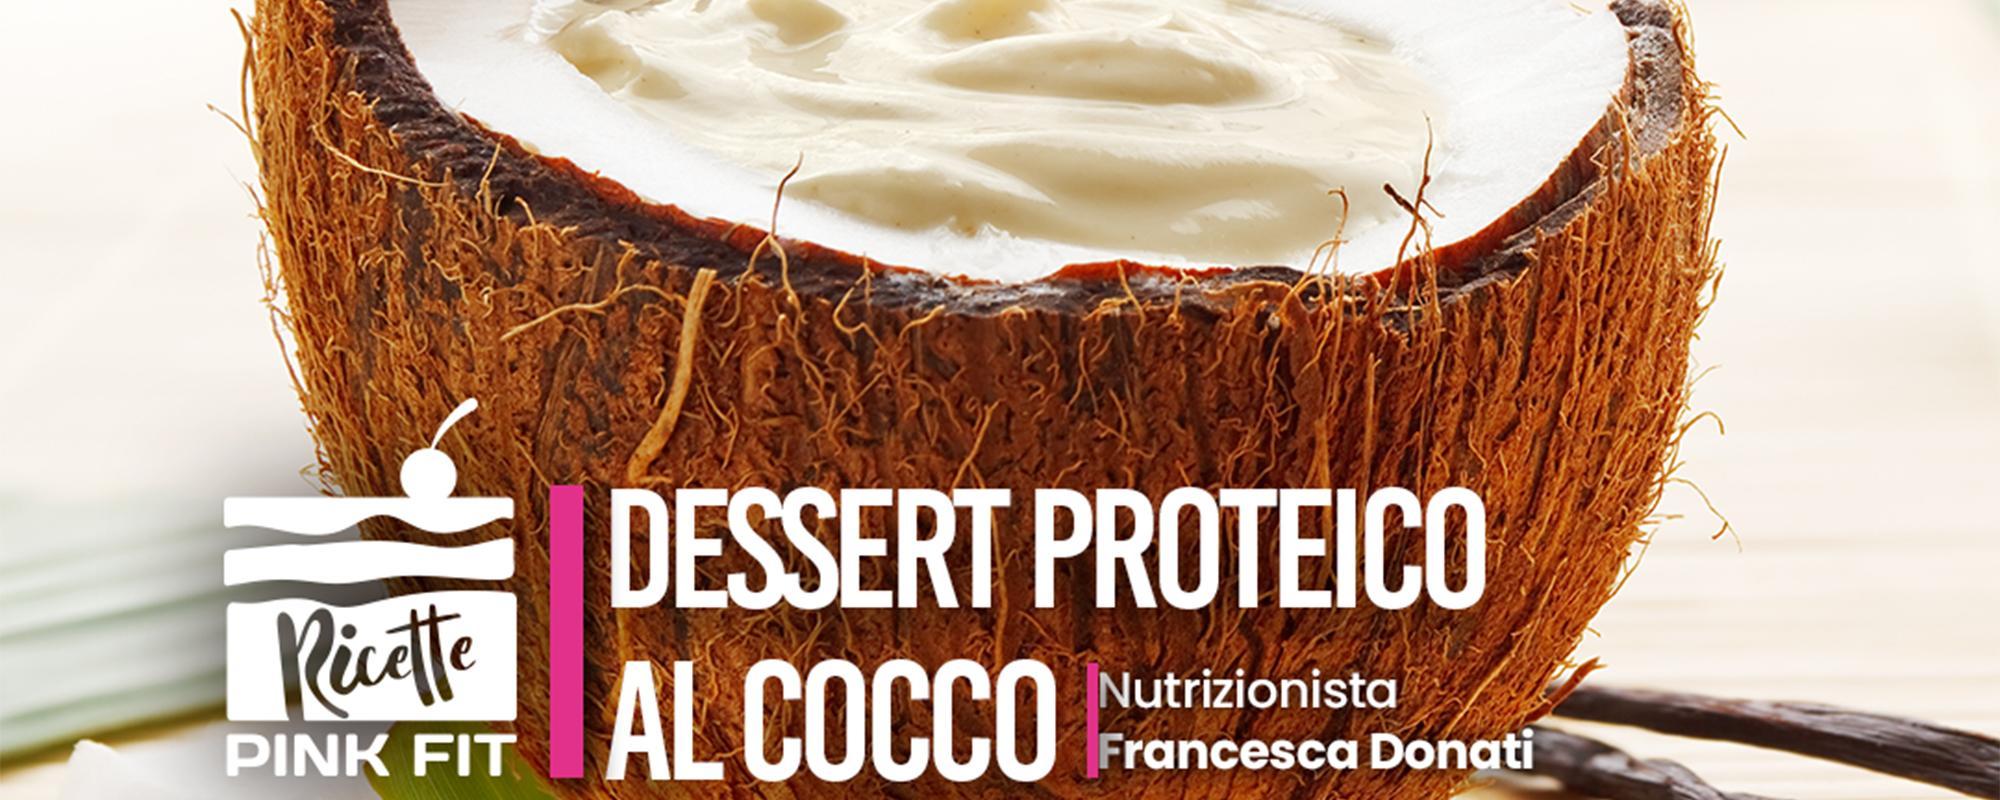 Dessert proteico al cocco